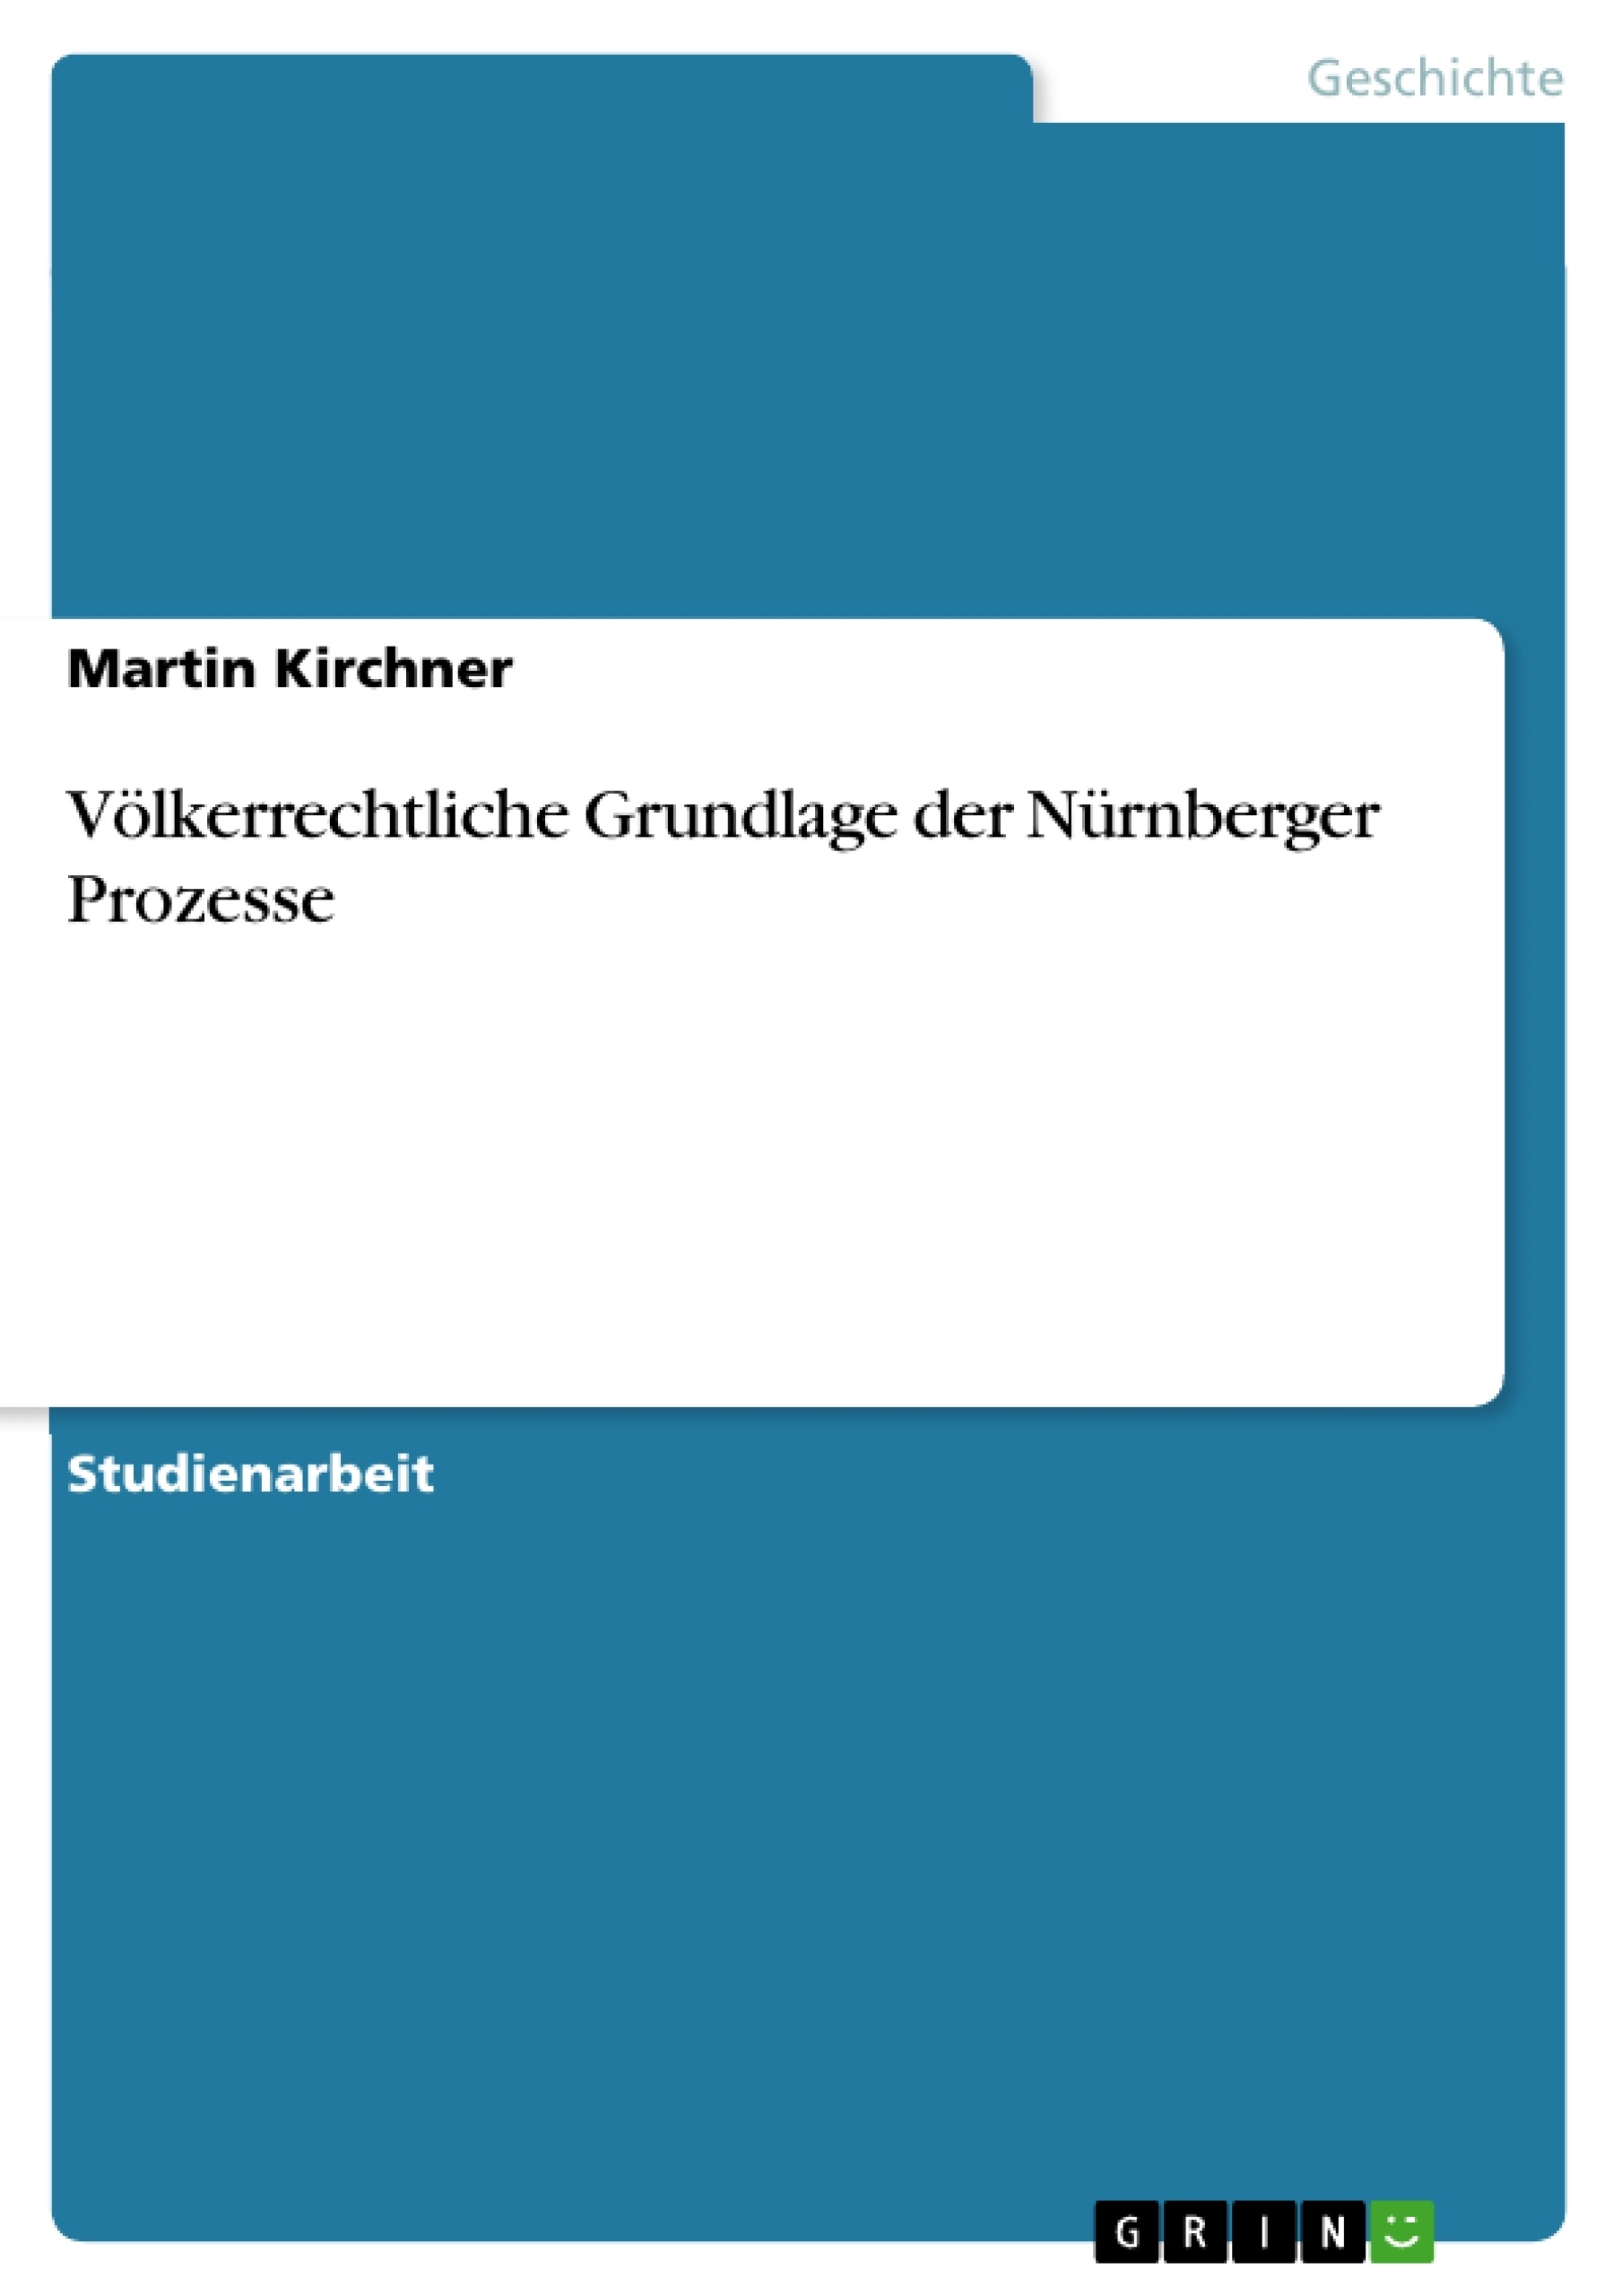 Title: Völkerrechtliche Grundlage der Nürnberger Prozesse